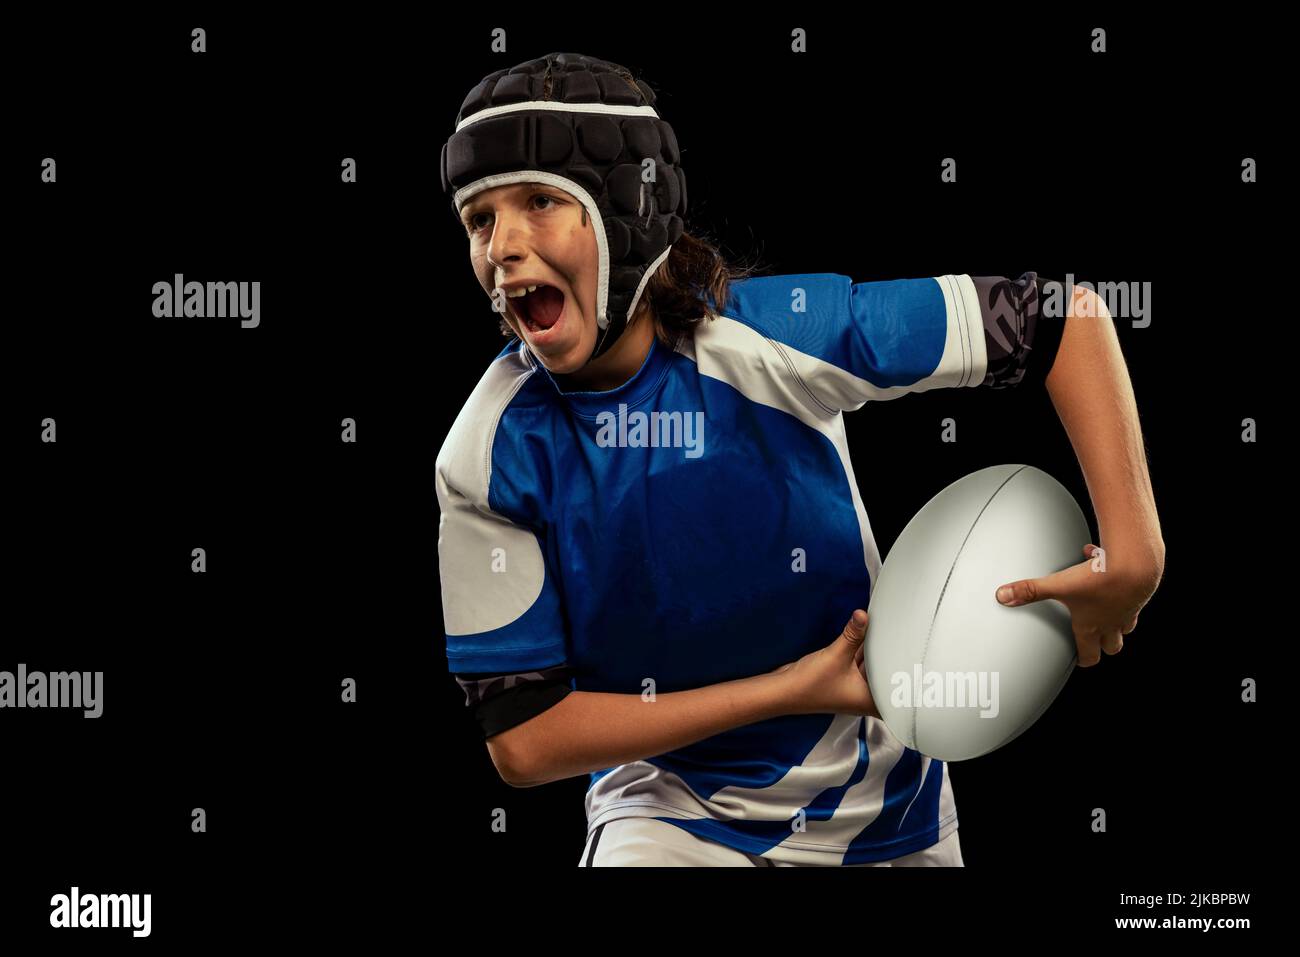 Ritratto dinamico di ragazzo in età scolastica, giocatore di rugby maschile junior che pratica il calcio di rugby isolato su sfondo scuro con alluvione erba. Foto Stock